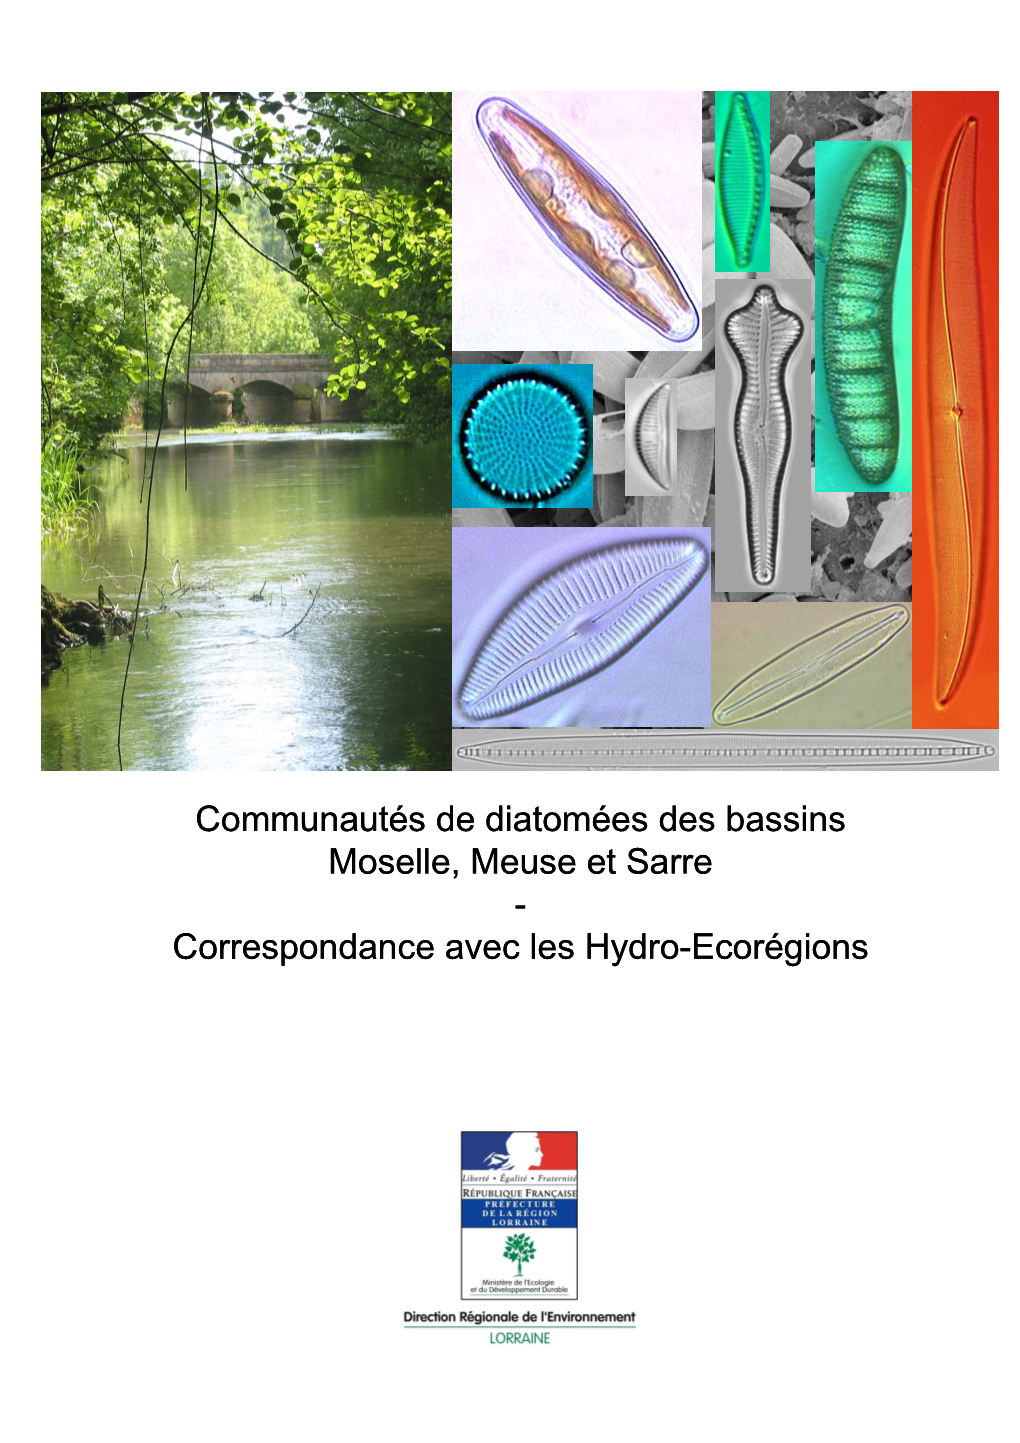 Communautés De Diatomées Moselle Meuse Sarre